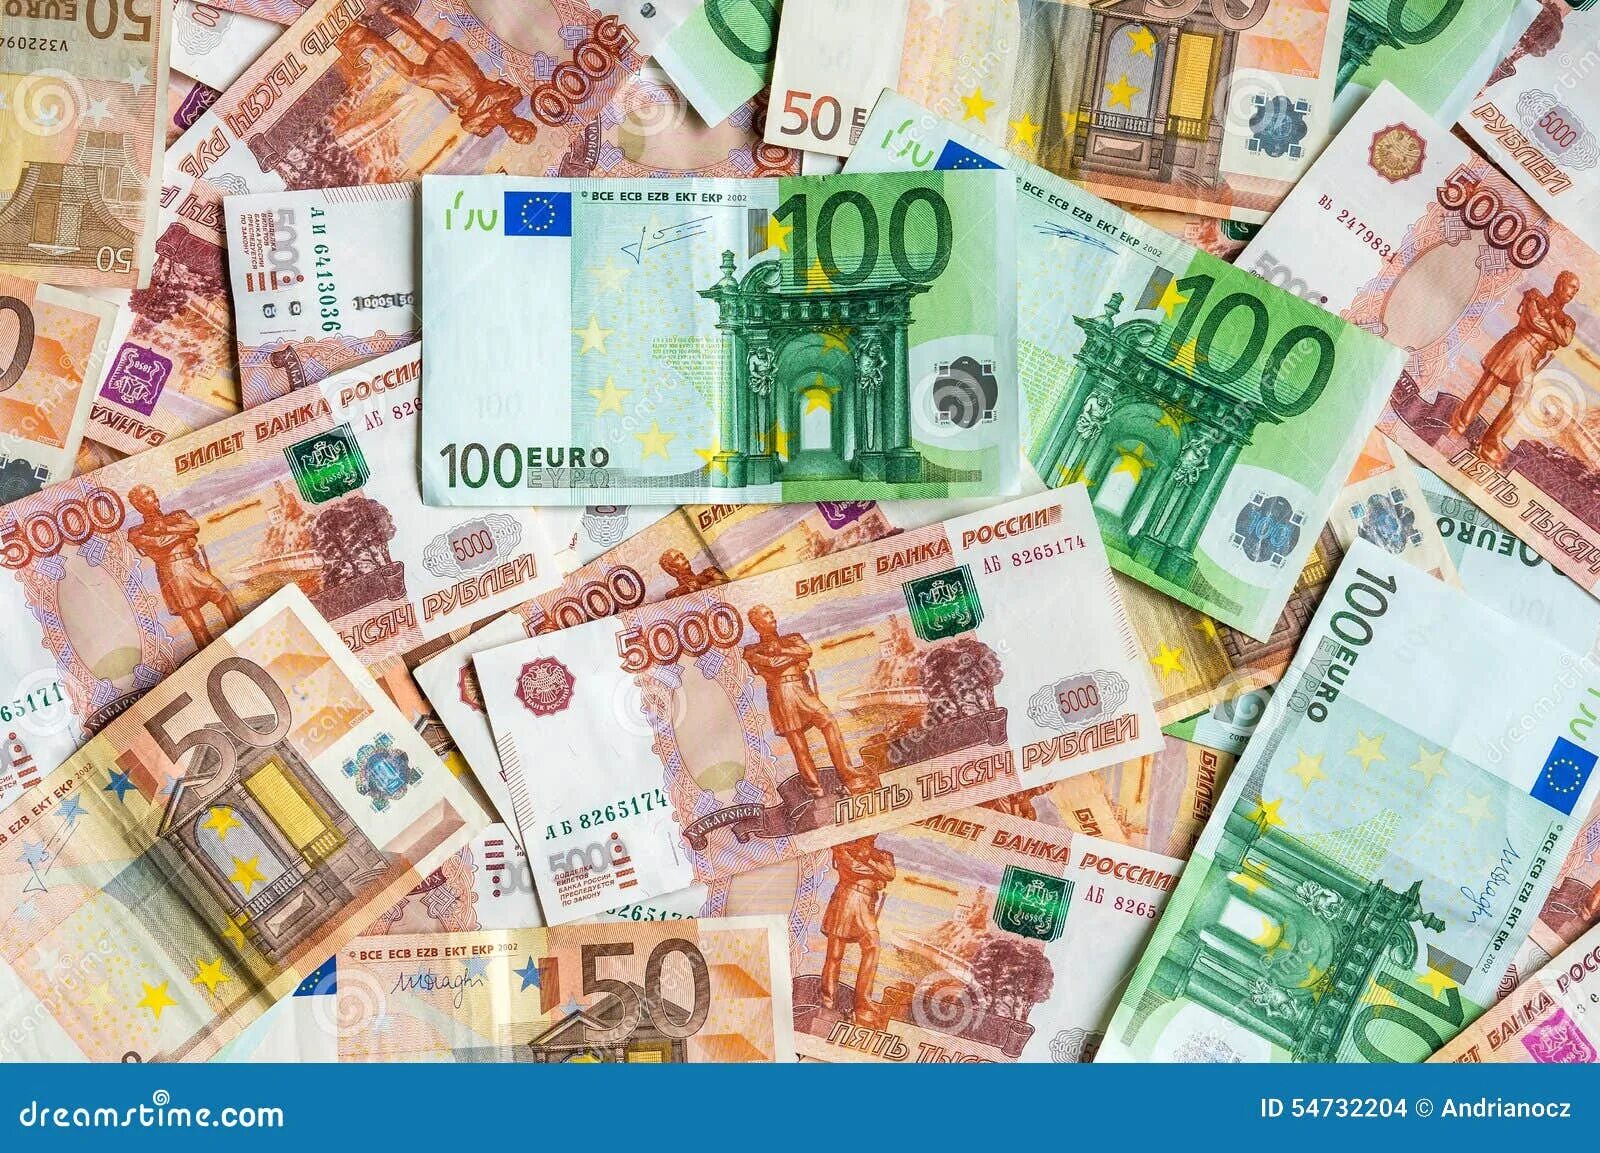 5000 в рублях на сегодня. 5000 Евро. 5000 Евро банкнота. 5000 Евро картинка. Картинка 5 тысяч евро.